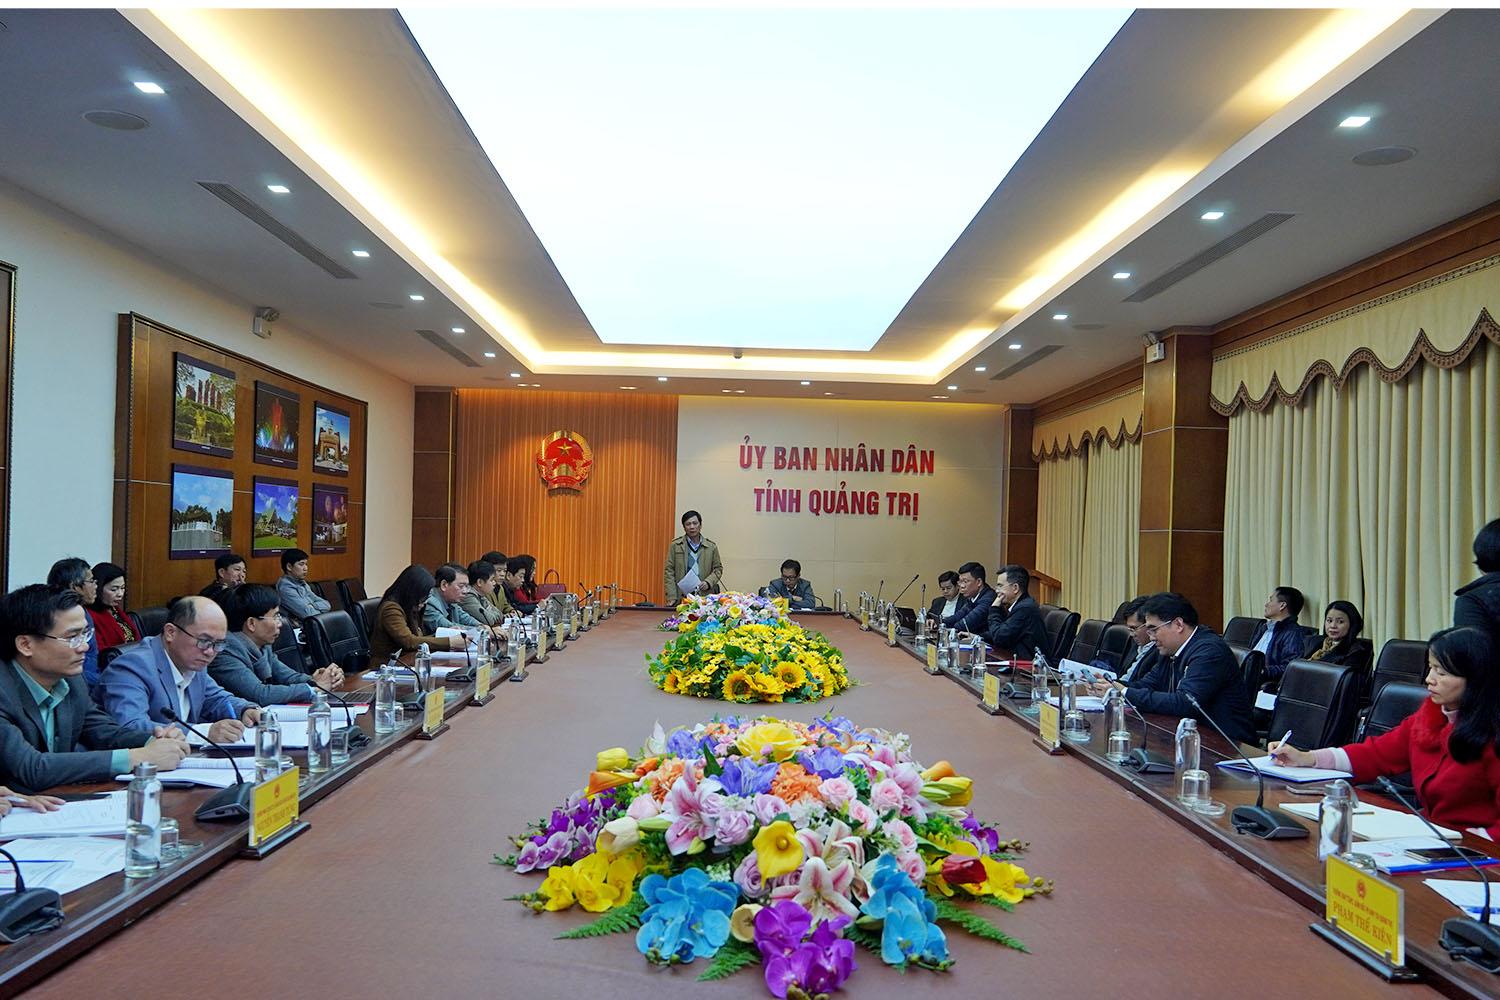 Tỉnh Quảng Trị và Đại học Huế tập trung nguồn lực để sớm thành lập đại học thành viên Đại học Huế tại Quảng Trị